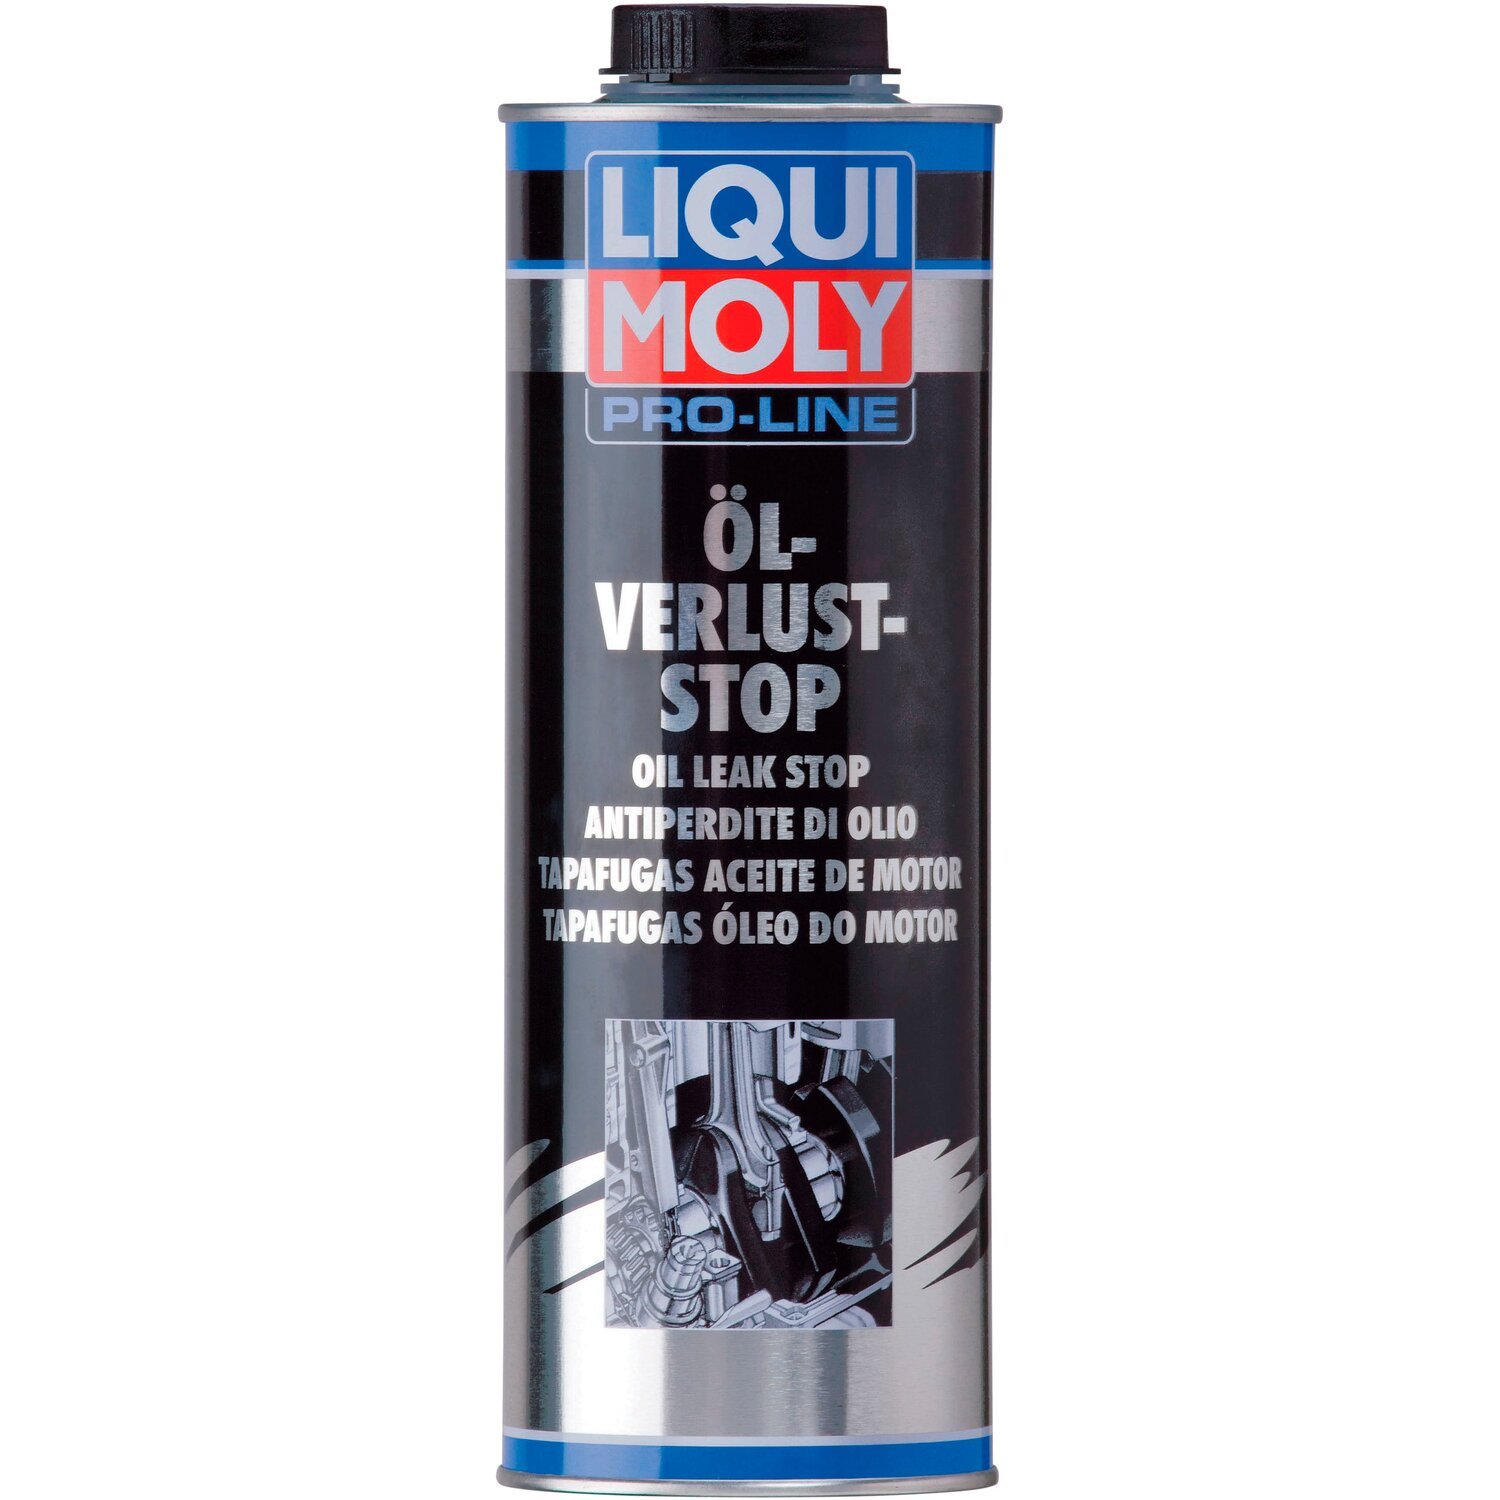 Засіб Liqui Moly для припинення витоку моторної оливи Pro-Line Ol-Verlust-Stop 1л (4100420051821)фото